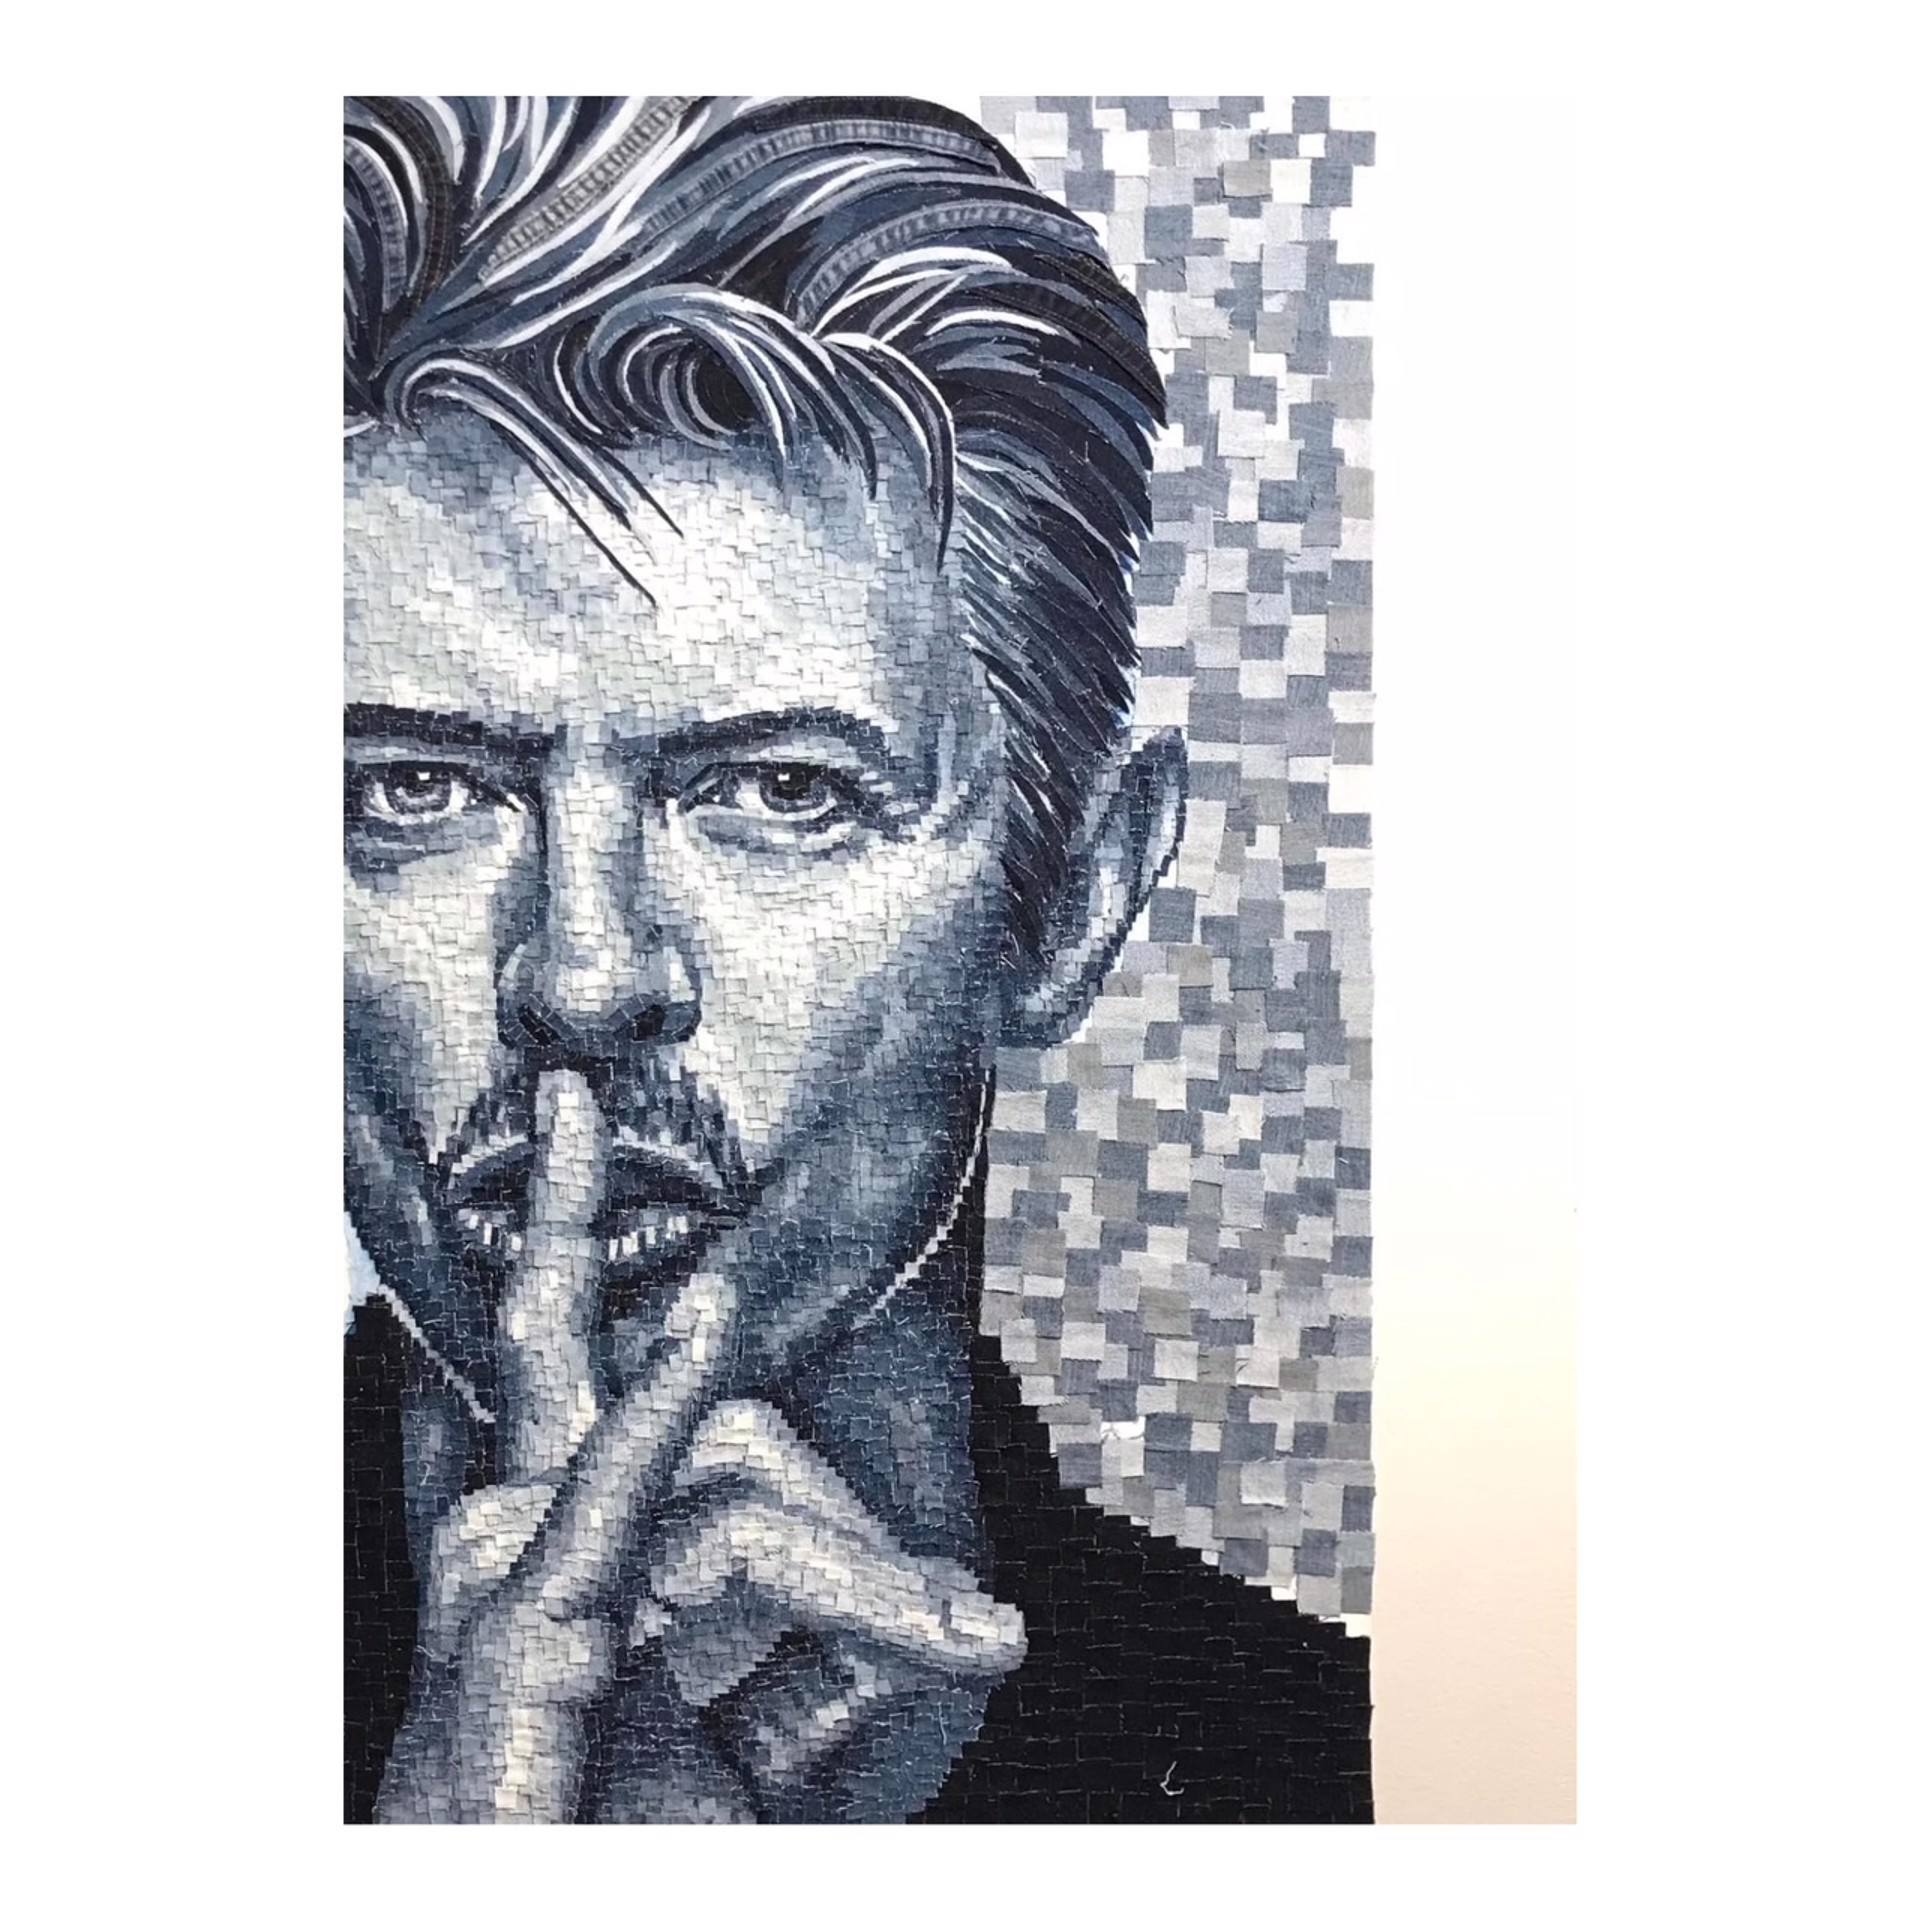 Bowie by Cristiam Ramos